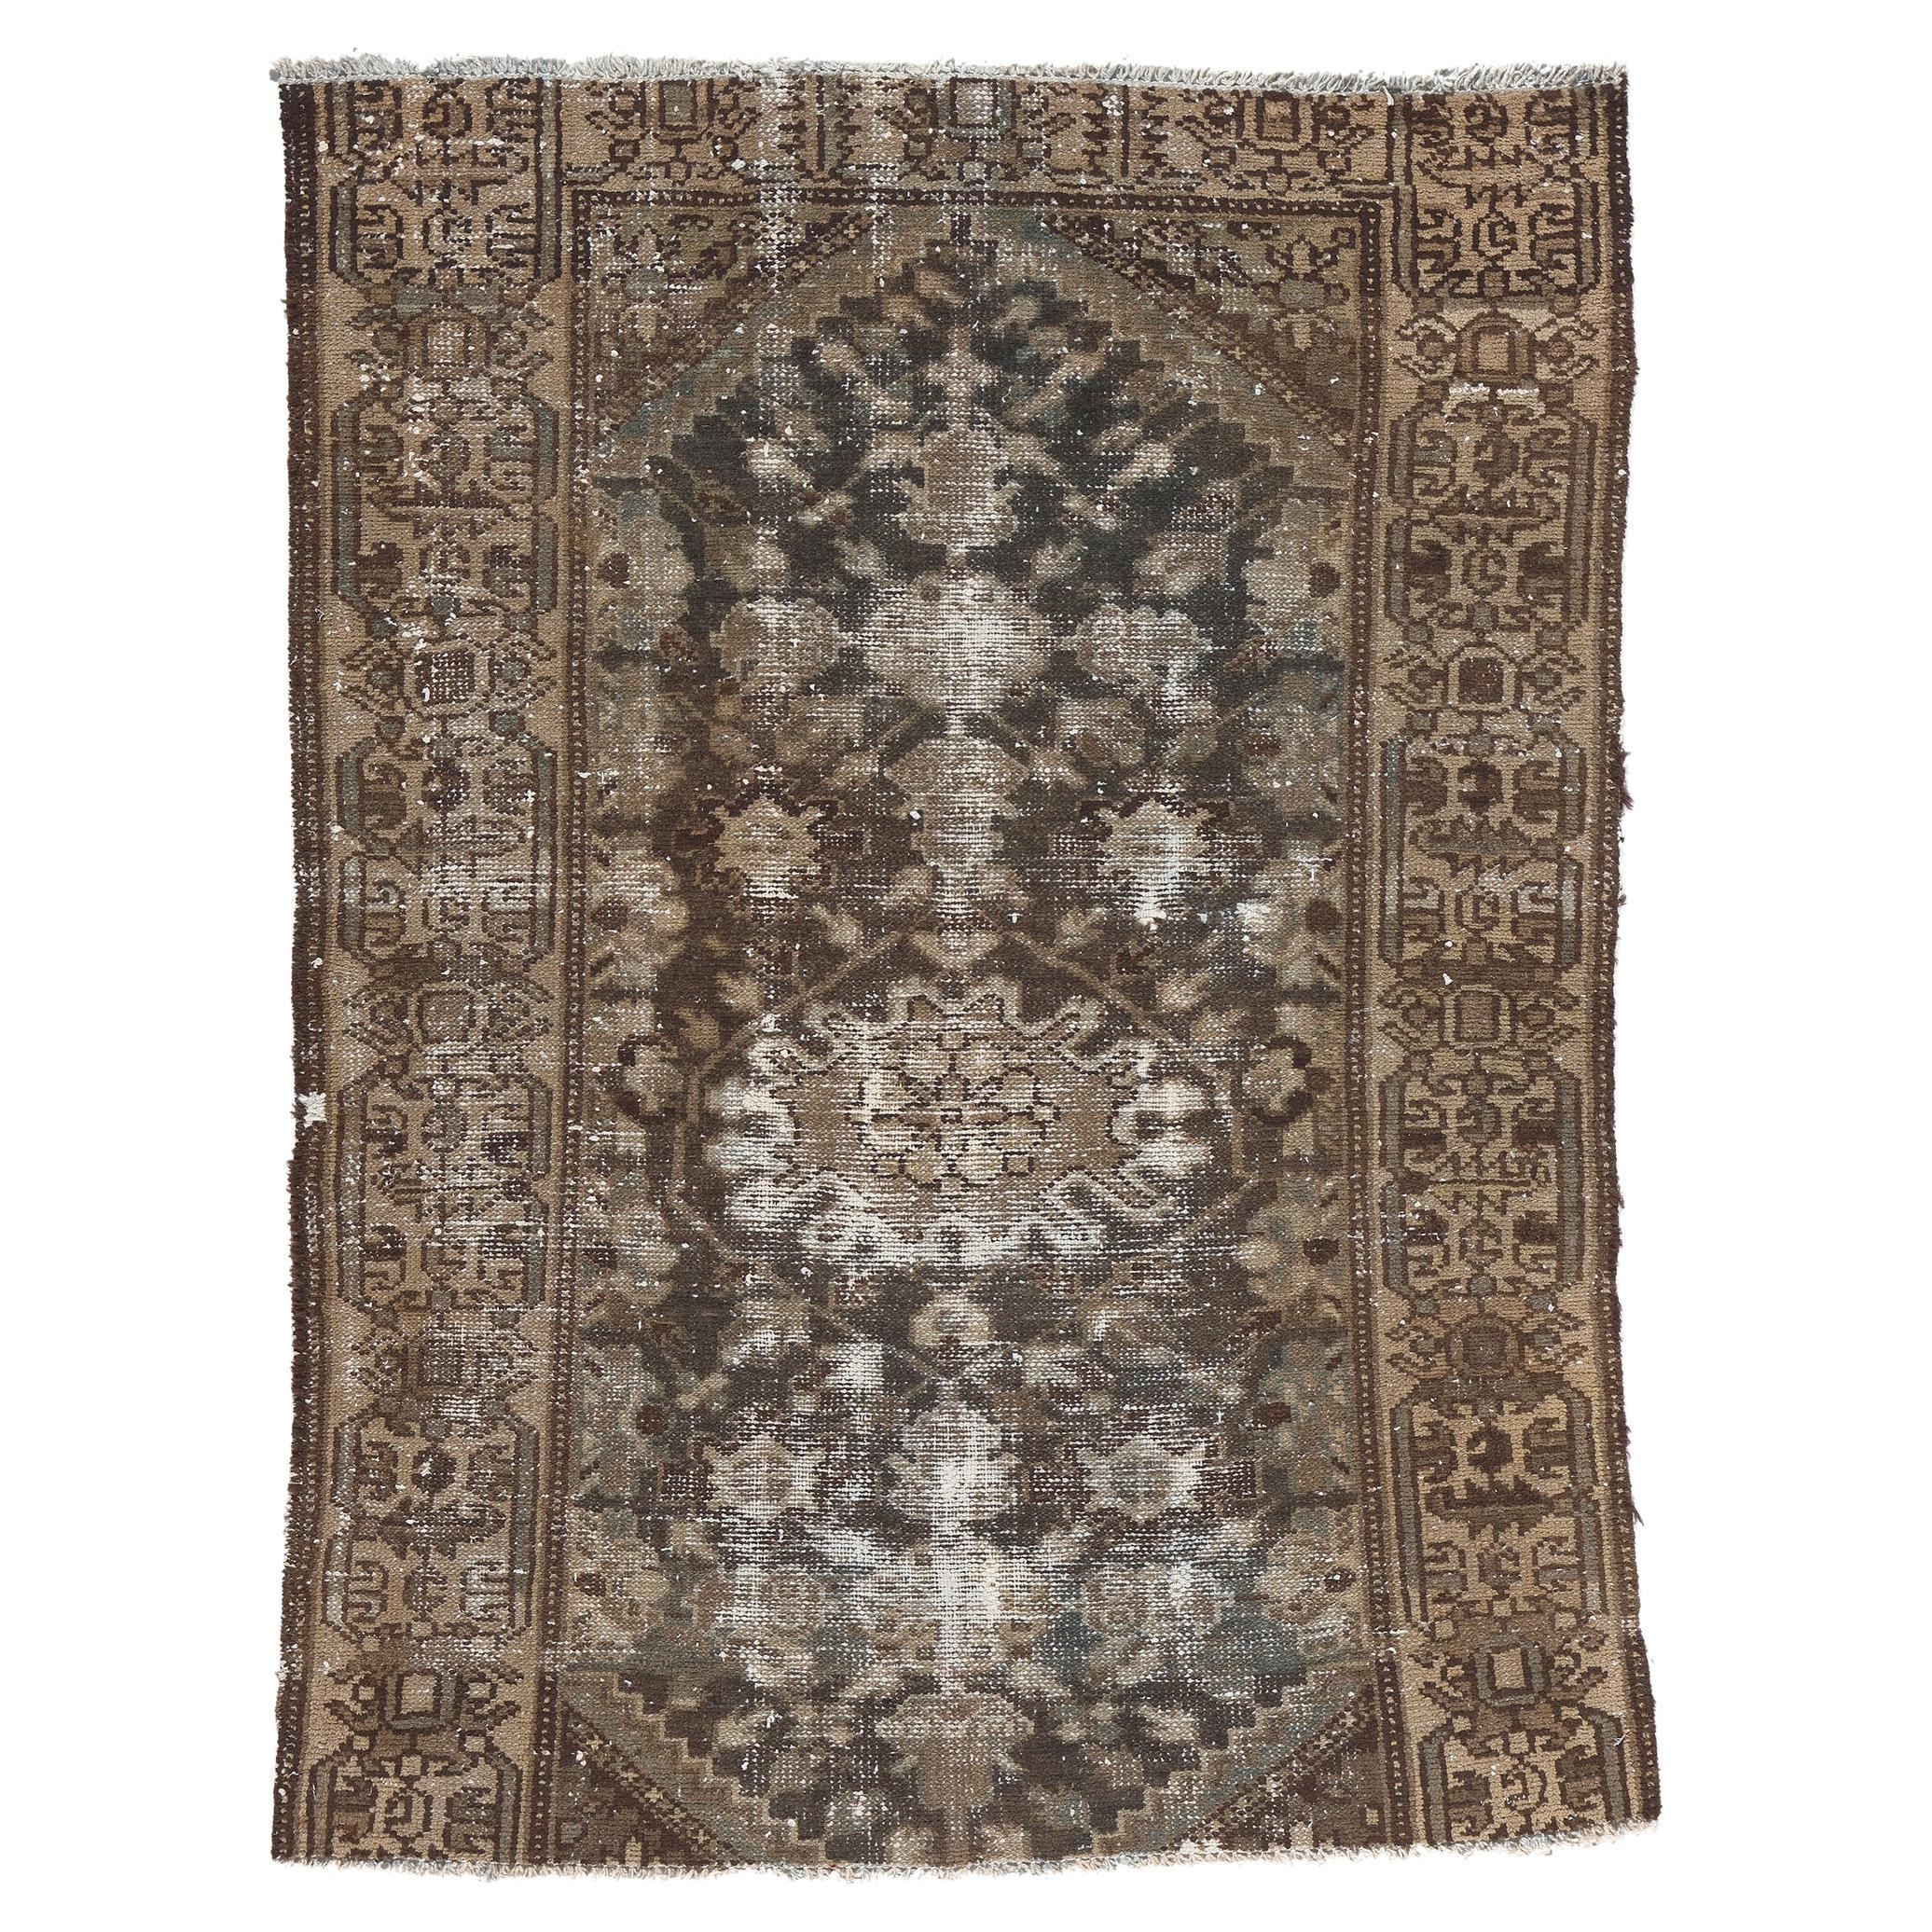 Antiker getragener persischer Teppich im Used-Look, rustikale Sensibilität trifft auf verwitterte Finesse